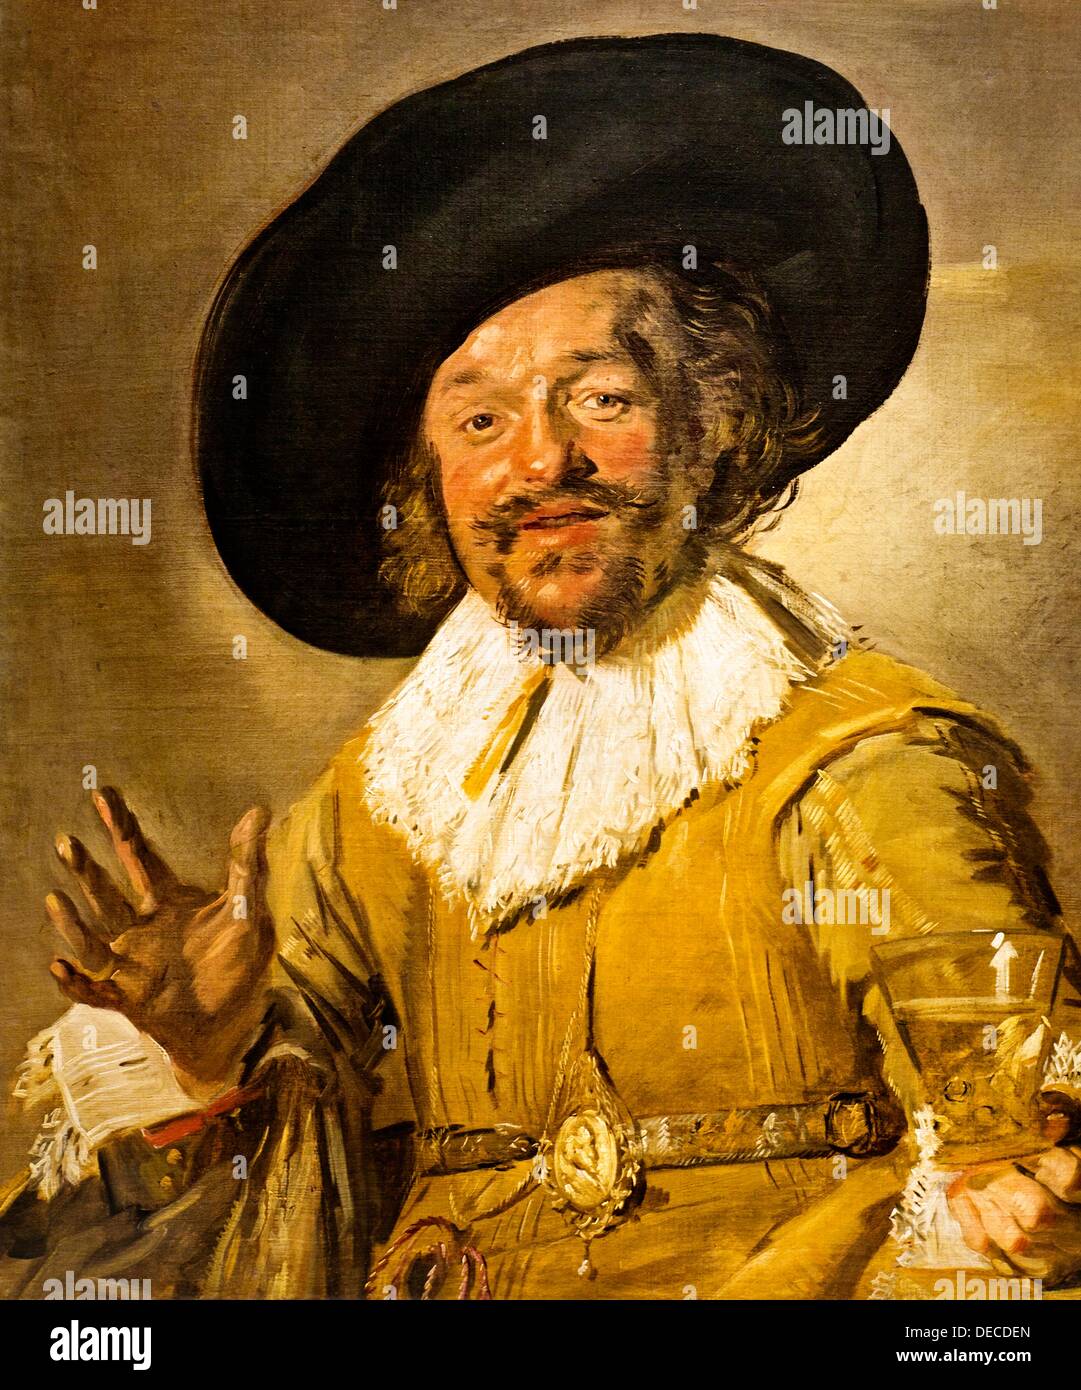 La Merry bevitore, olio su tela, 1628-1630, Frans Hals Rijksmuseum, museo Rijks, Amsterdam, Paesi Bassi. Foto Stock